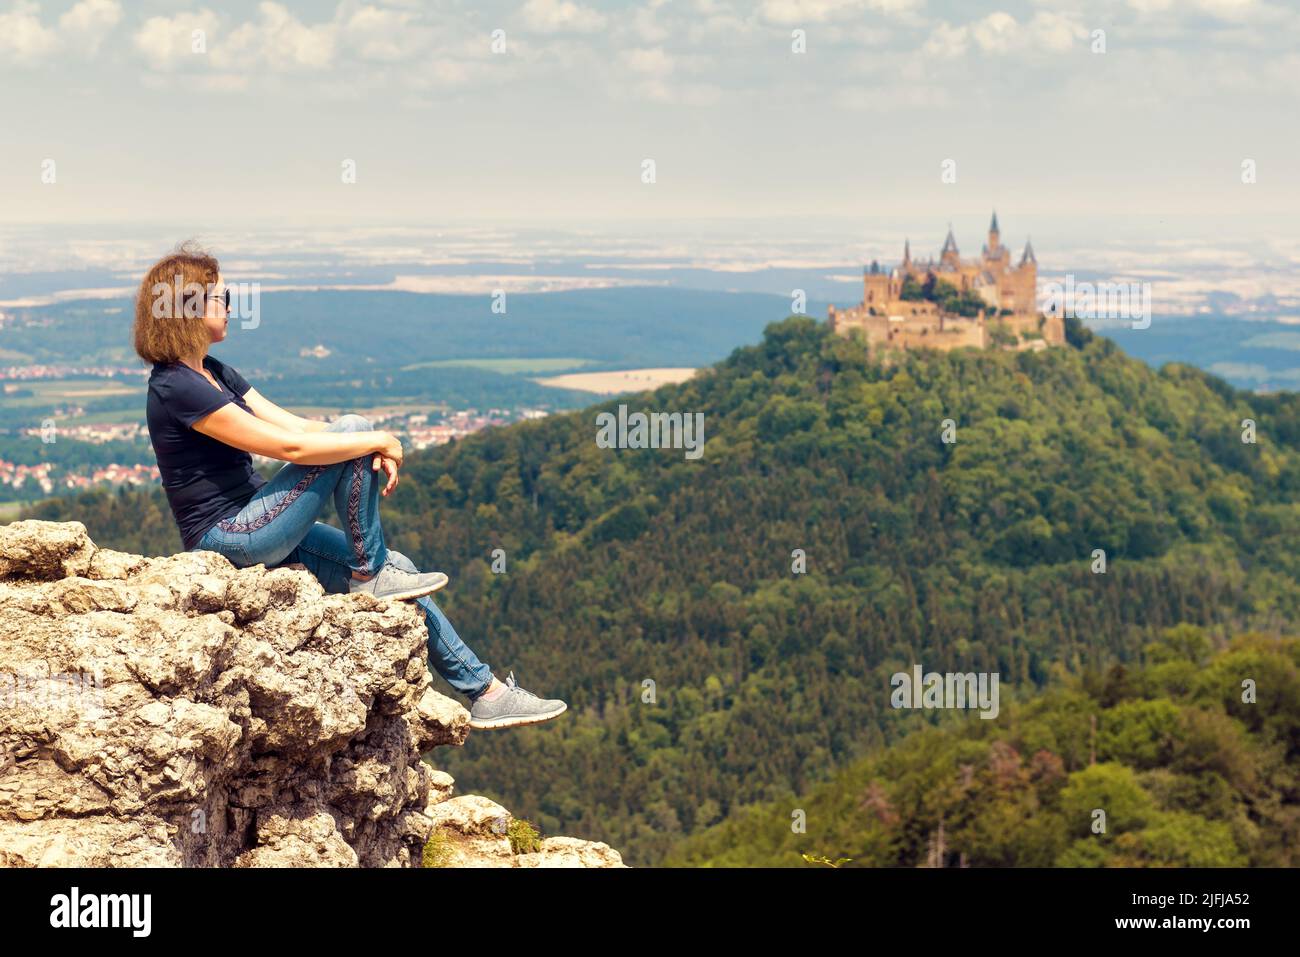 Ragazza turistica seduto sulla scogliera guarda il castello di Hohenzollern sulla cima della montagna, Germania. La donna viaggia nelle Alpi Sveve in estate. Concetto di escursionismo persone Foto Stock